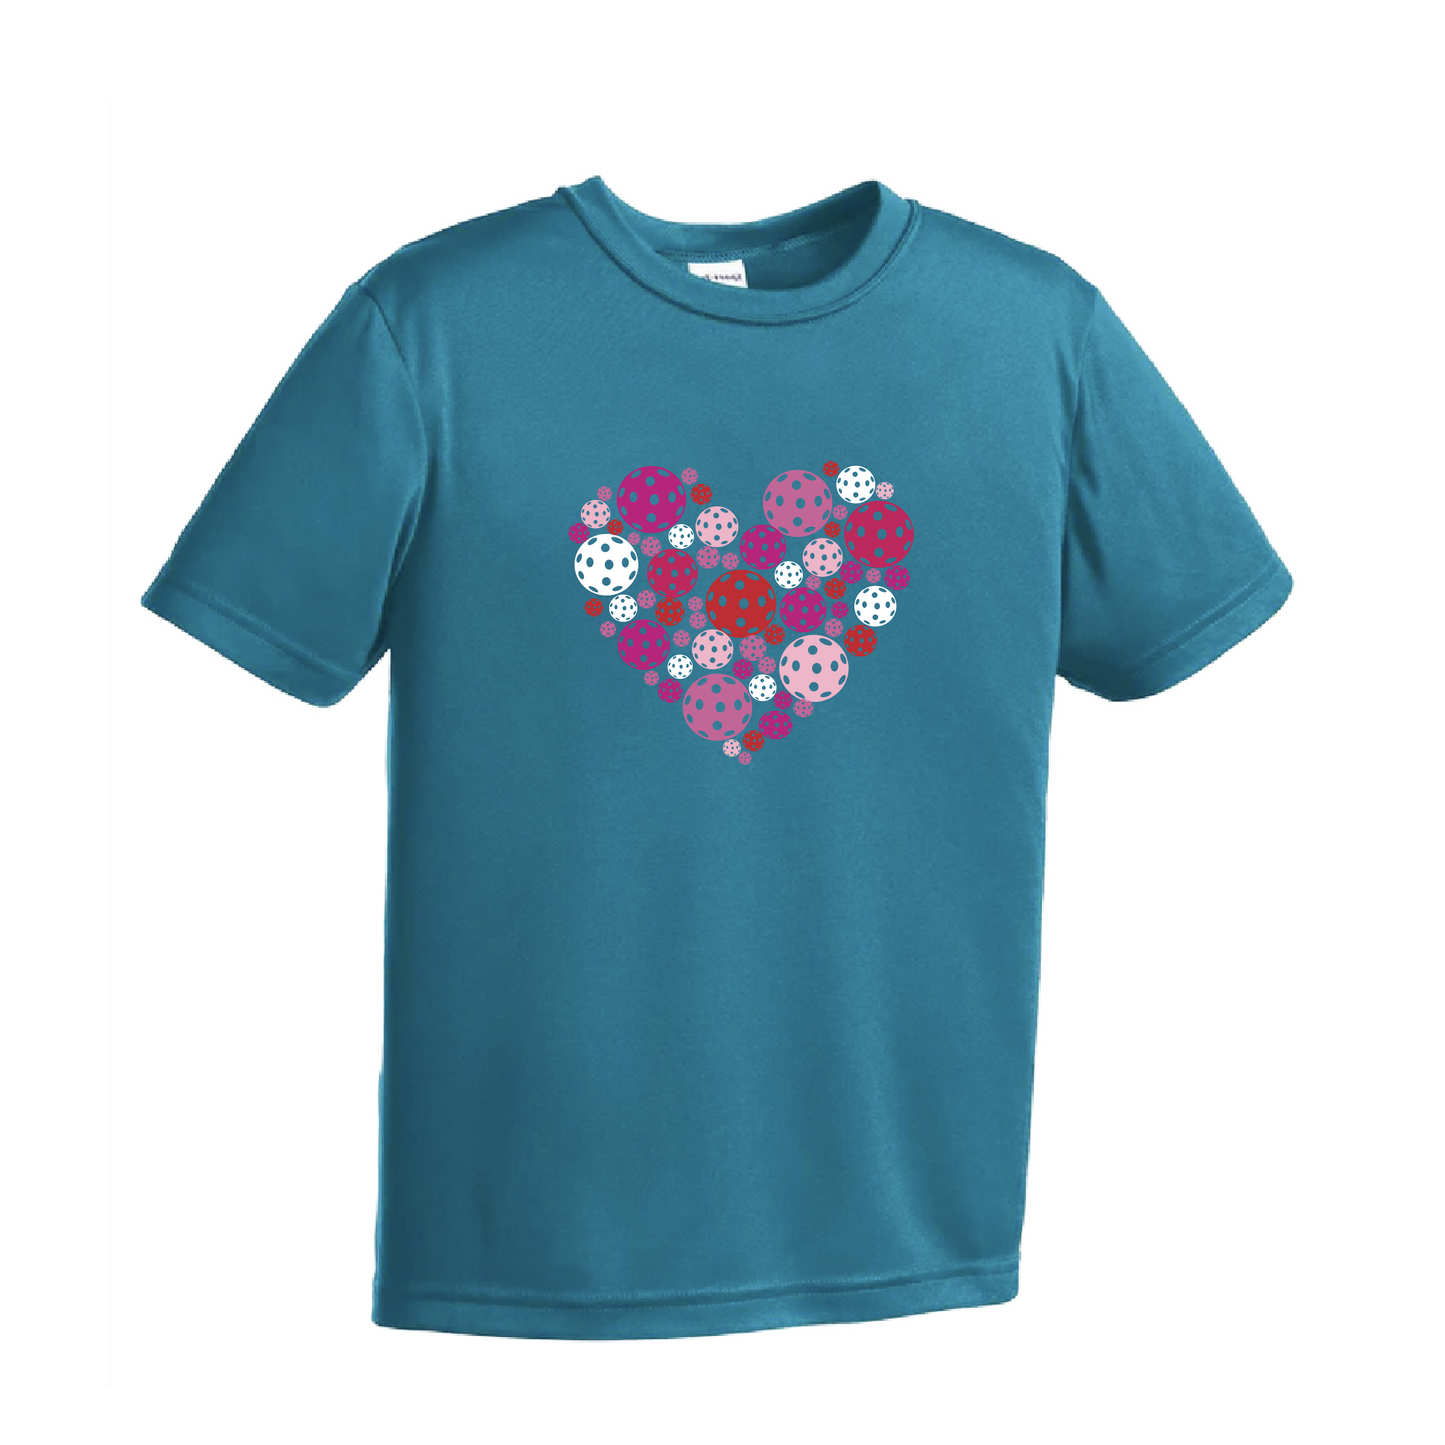 Pickleball Heart | Youth Short Sleeve Athletic Pickleball Shirt | 100% Polyester